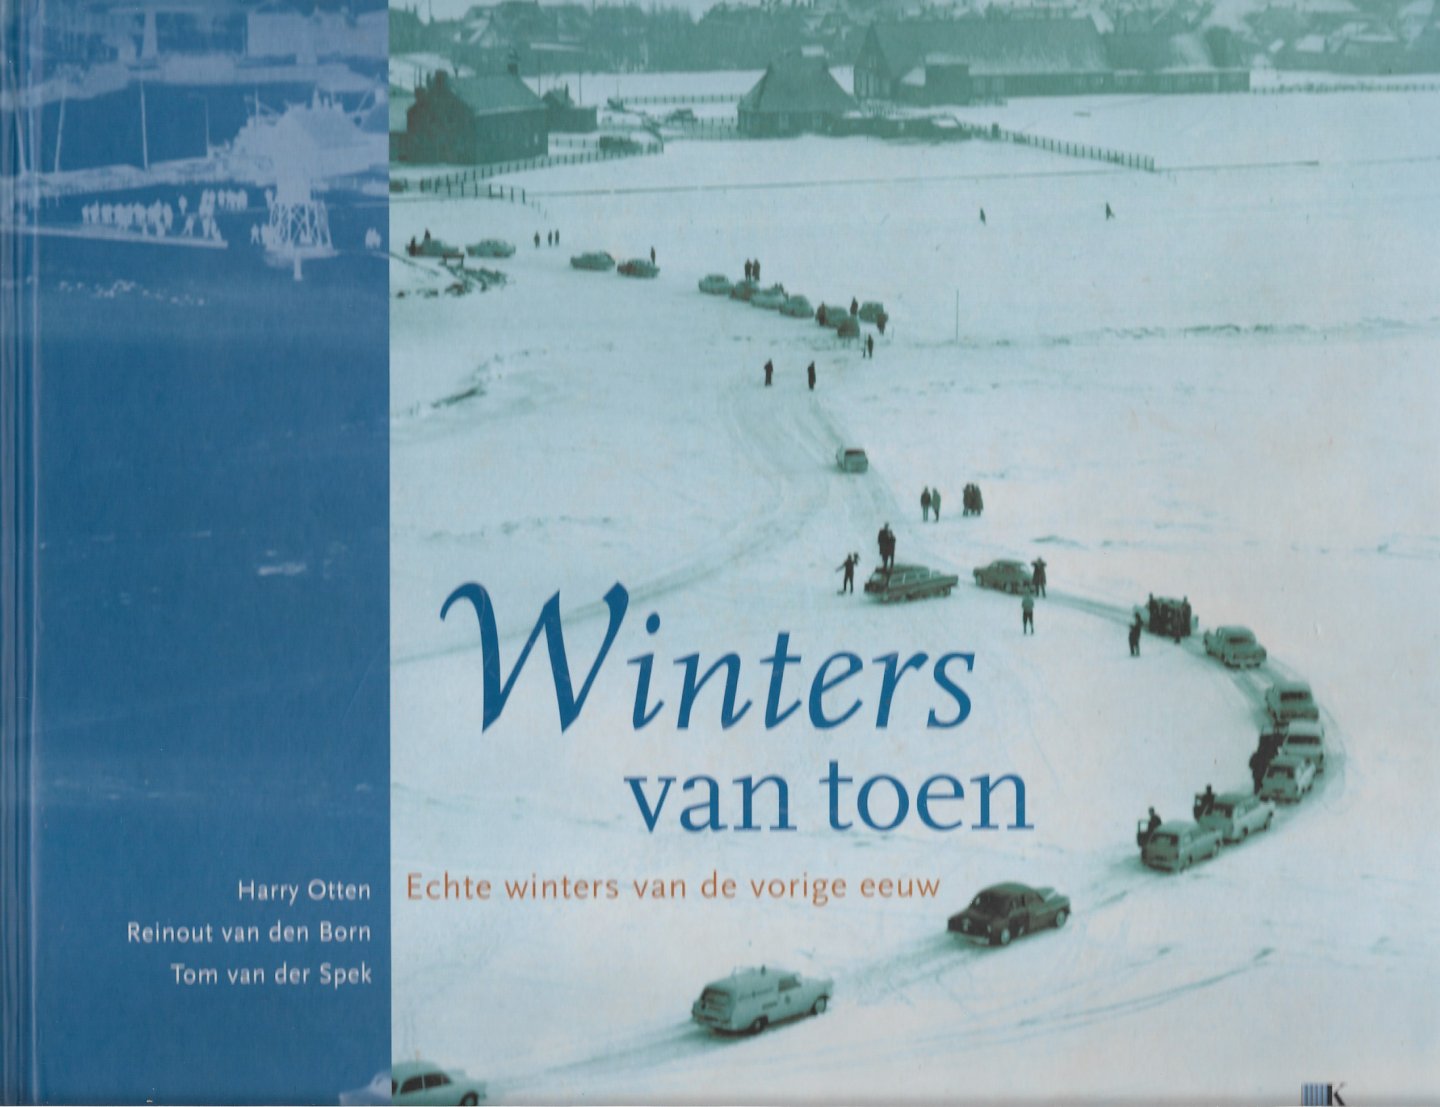 Spek, T. van de, Born, Reinout van den, Otten, Harry - Winters van toen / echte winters van de vorige eeuw